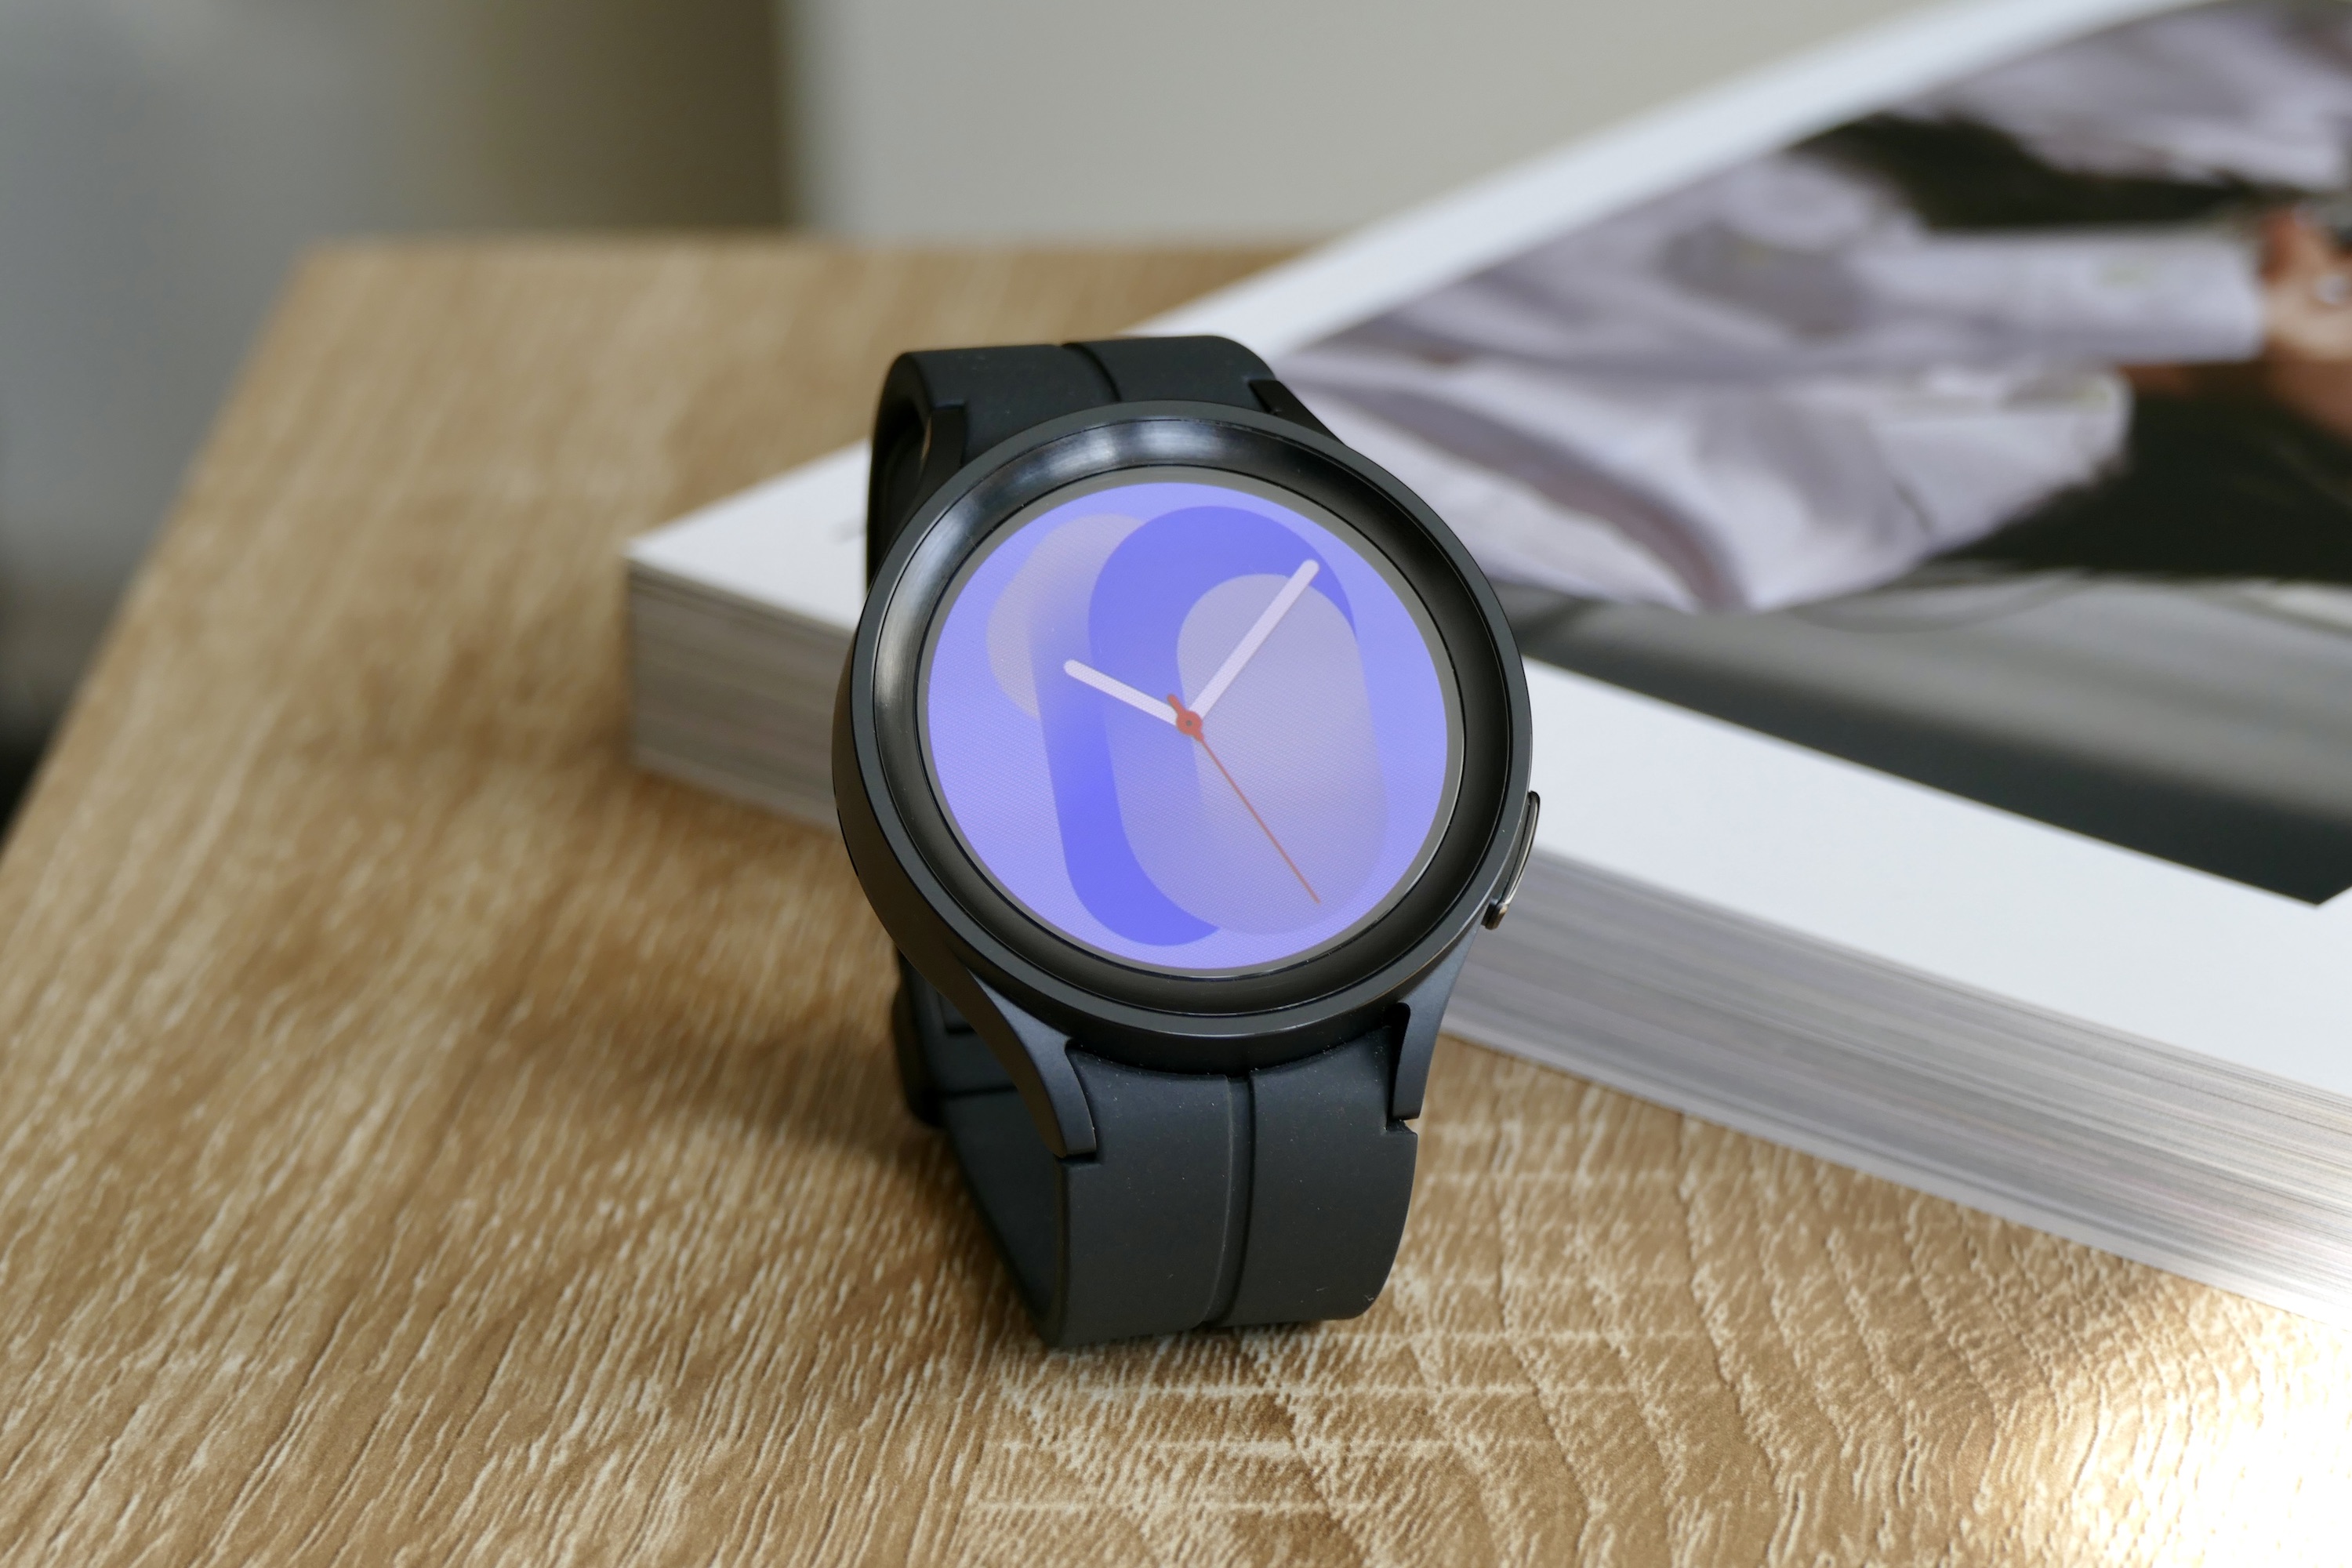 Nếu bạn đang tìm kiếm một chiếc đồng hồ thông minh đáng mua thì hãy đến với bài đánh giá Galaxy Watch 5 Pro này. Chúng tôi sẽ giúp bạn có quyết định mua đúng nhất với những đánh giá chân thành và chi tiết từ chuyên gia. Hãy xem hình ảnh để cảm nhận sự tuyệt vời của sản phẩm này.